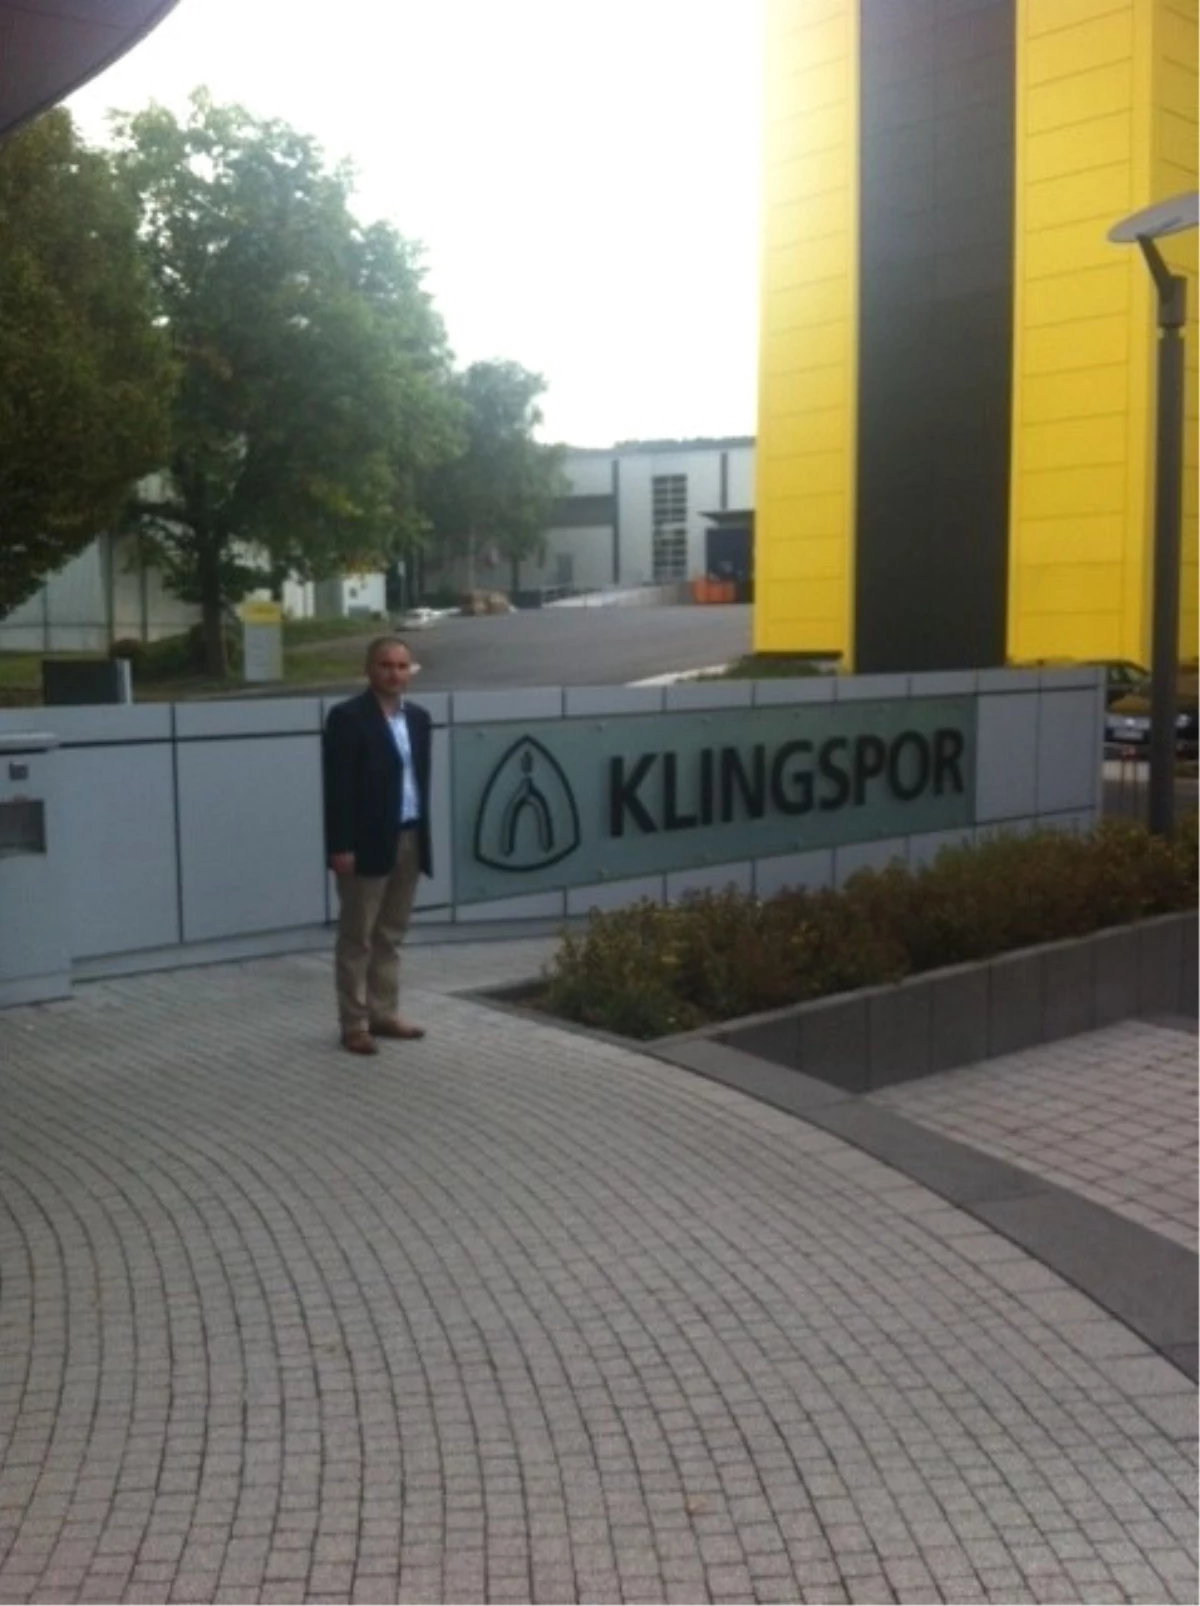 Sfc Entegre Orman Ürünleri, Alman Klingspor Firmasına Teknik Gezi Düzenledi